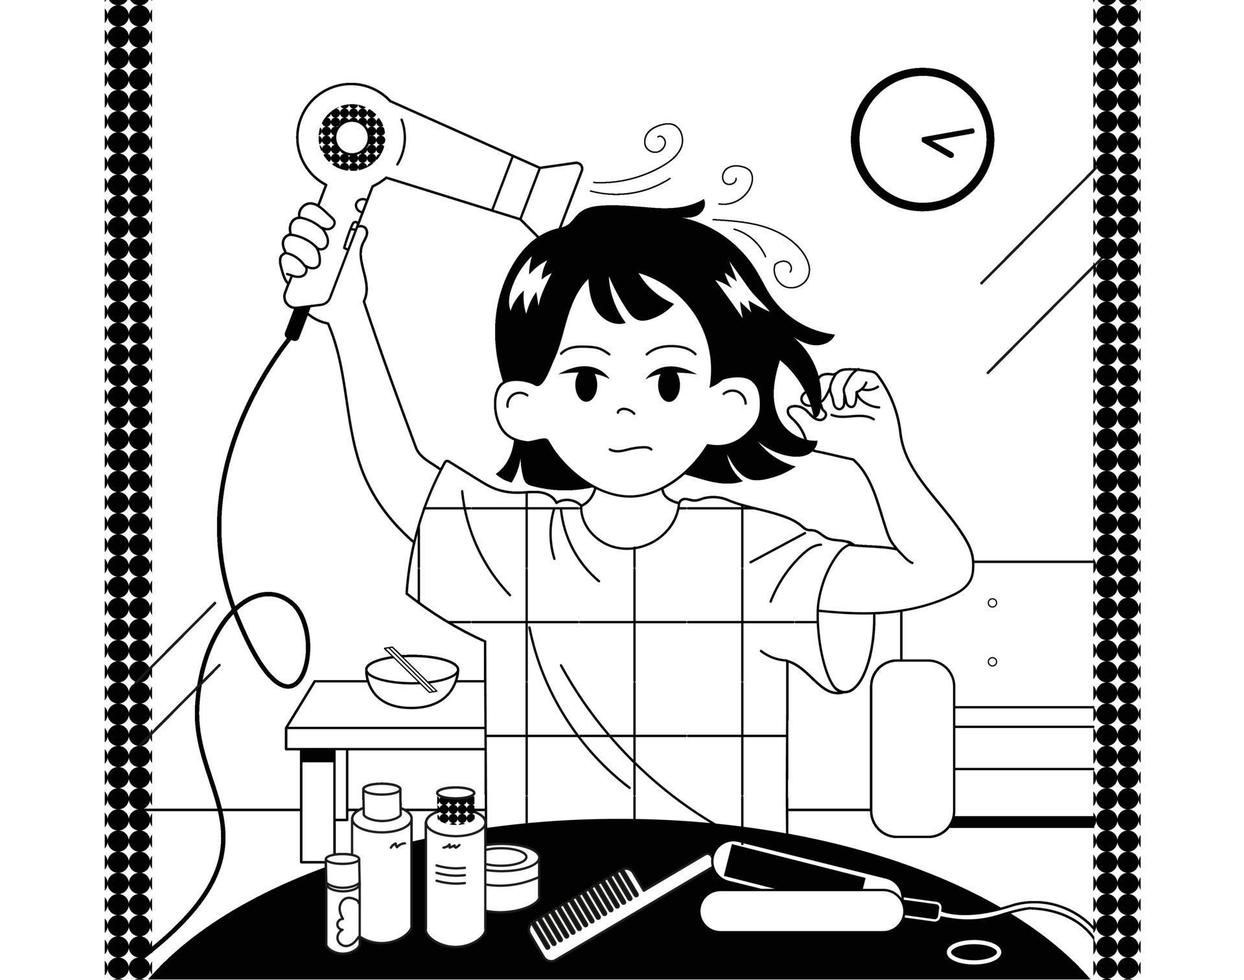 en flicka torkar håret med en torktumlare. handritade illustrationer för stilvektordesign. vektor